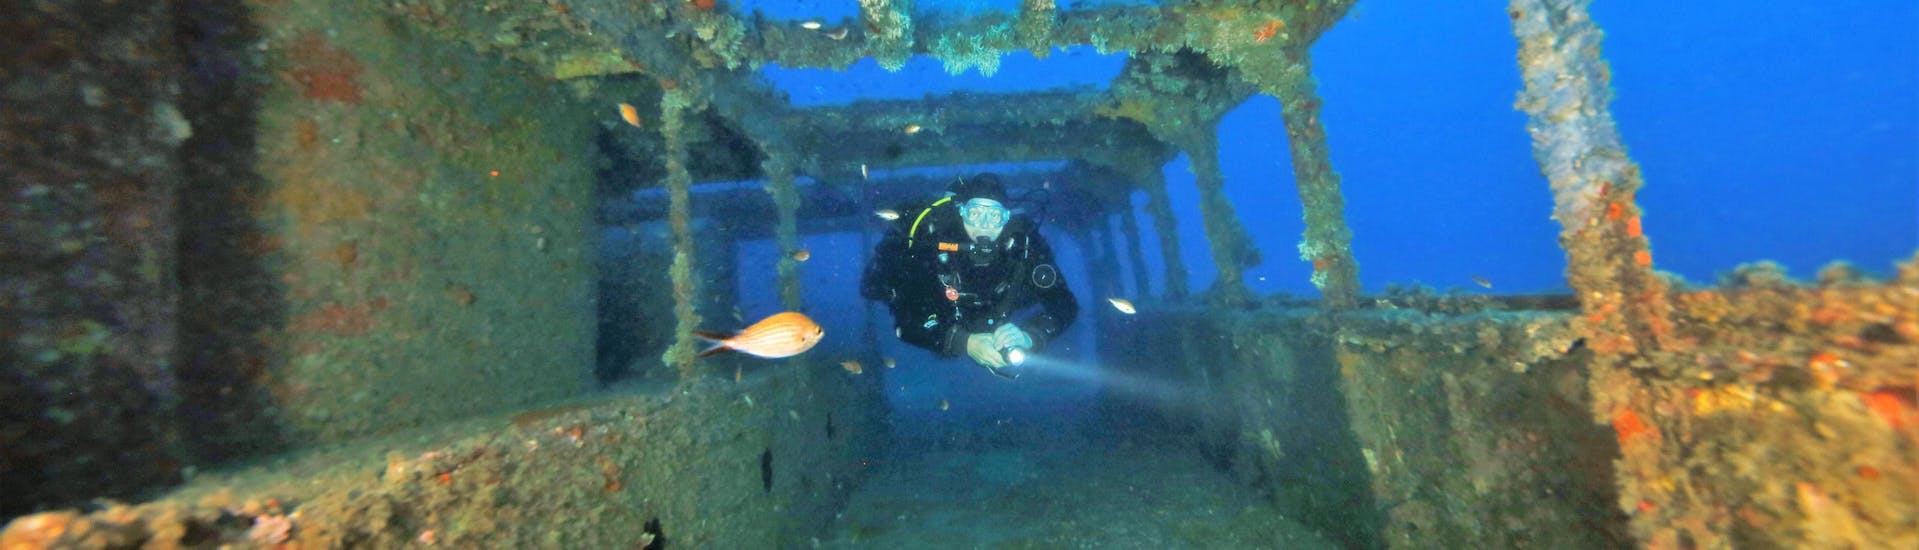 Un plongeur explore une épave à Malte lors d'une Plongée d'Exploration depuis St Paul's Bay avec Octopus Garden.